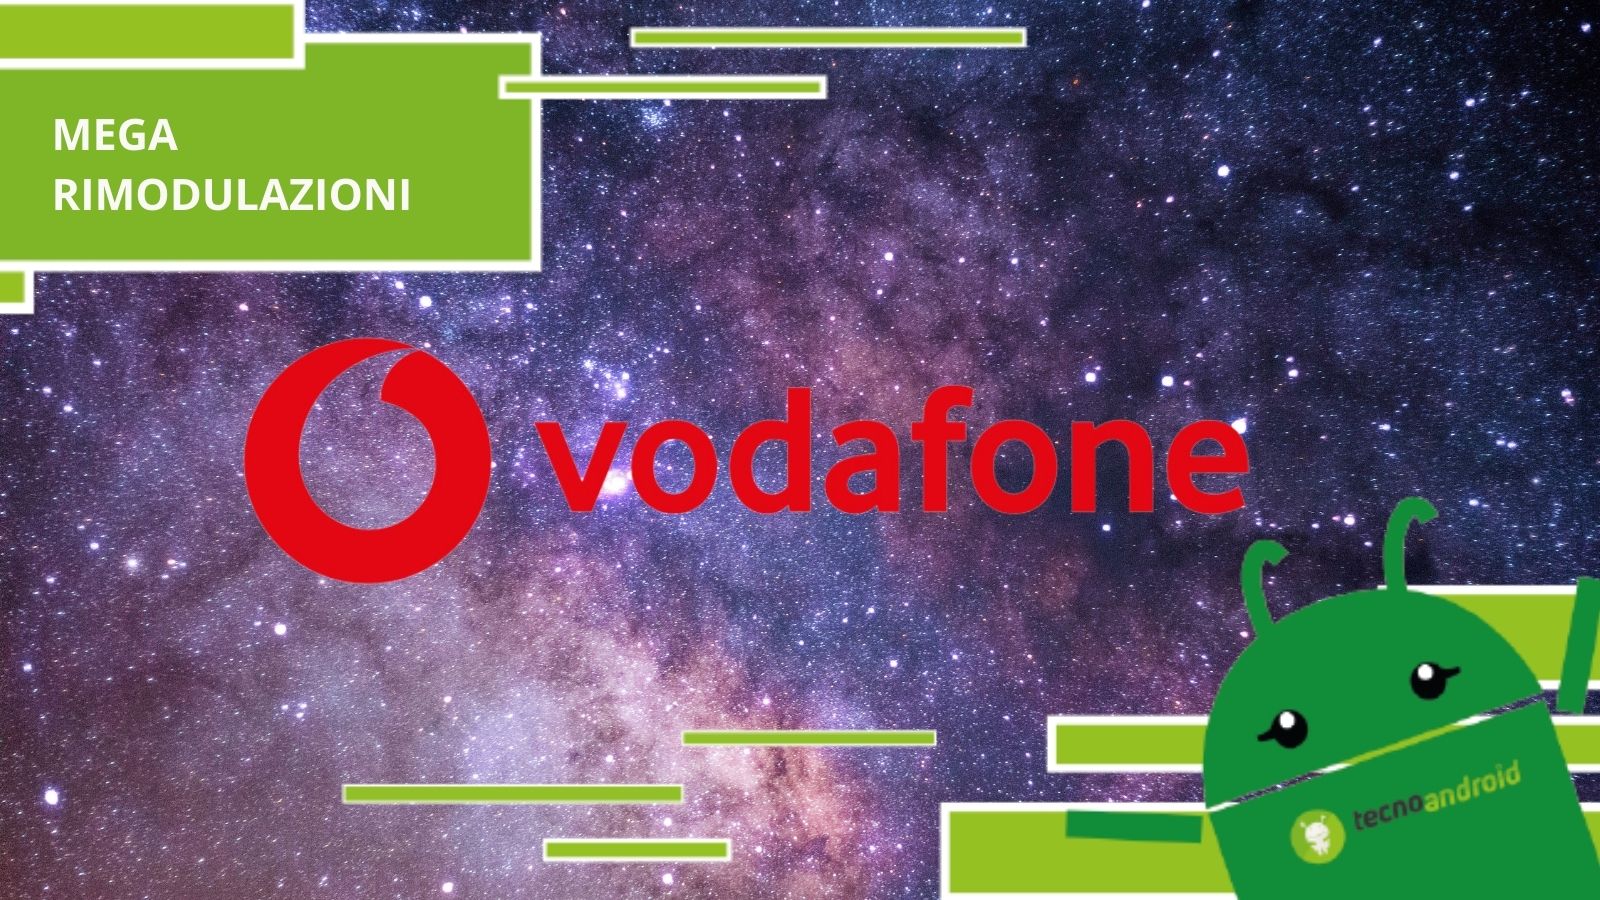 Vodafone - prezzi delle tariffe diretti alle stelle, mega rimodulazioni in arrivo